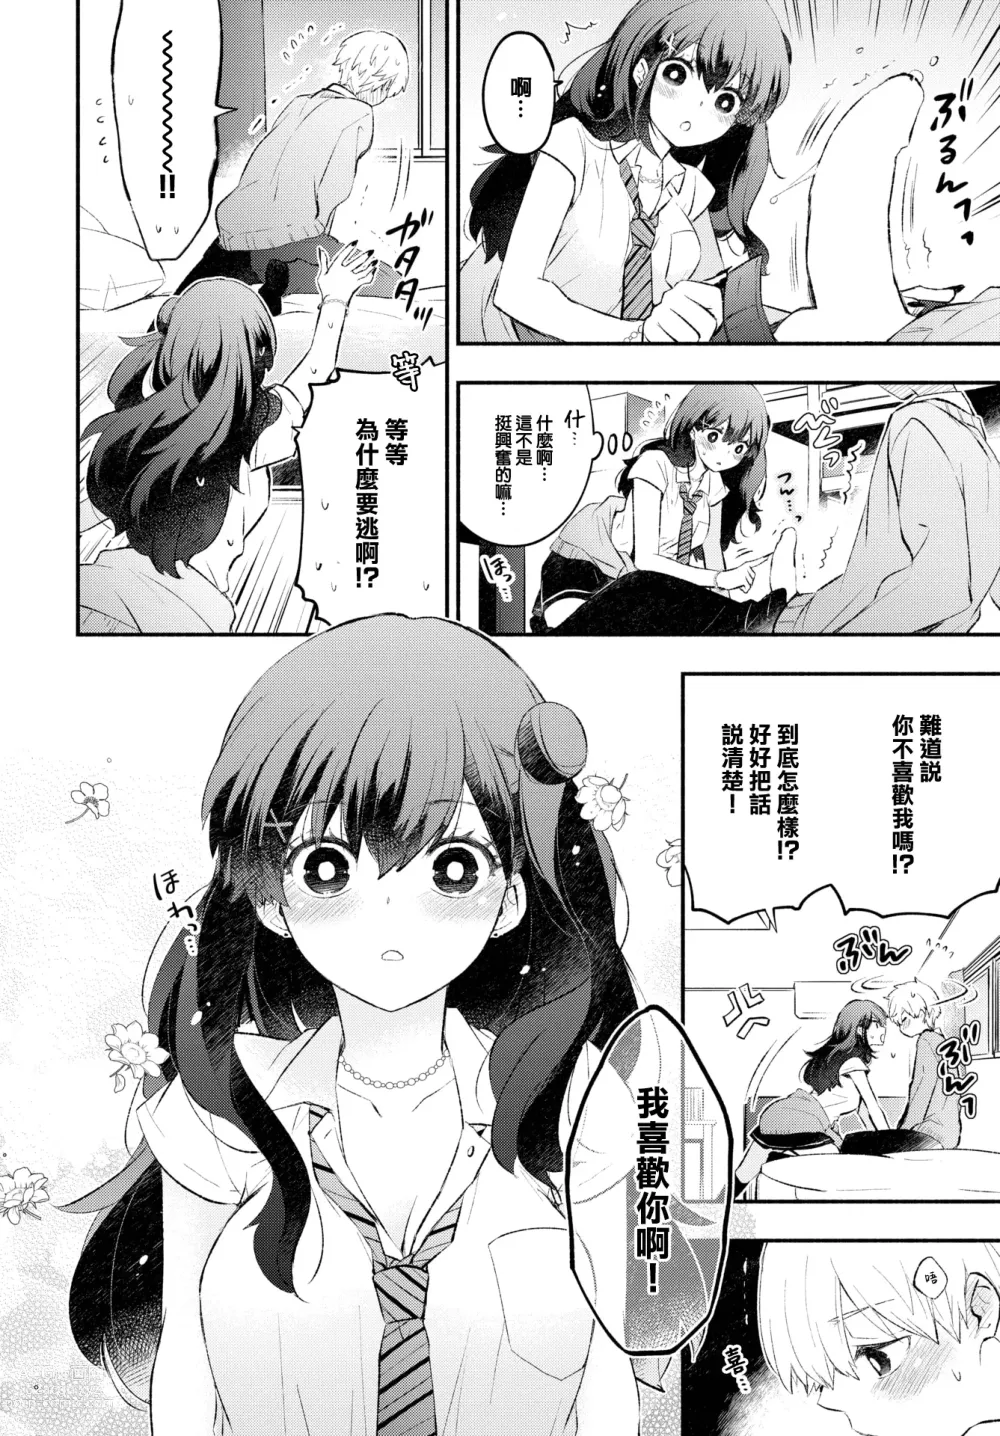 Page 7 of manga Usotsuki Kanojo